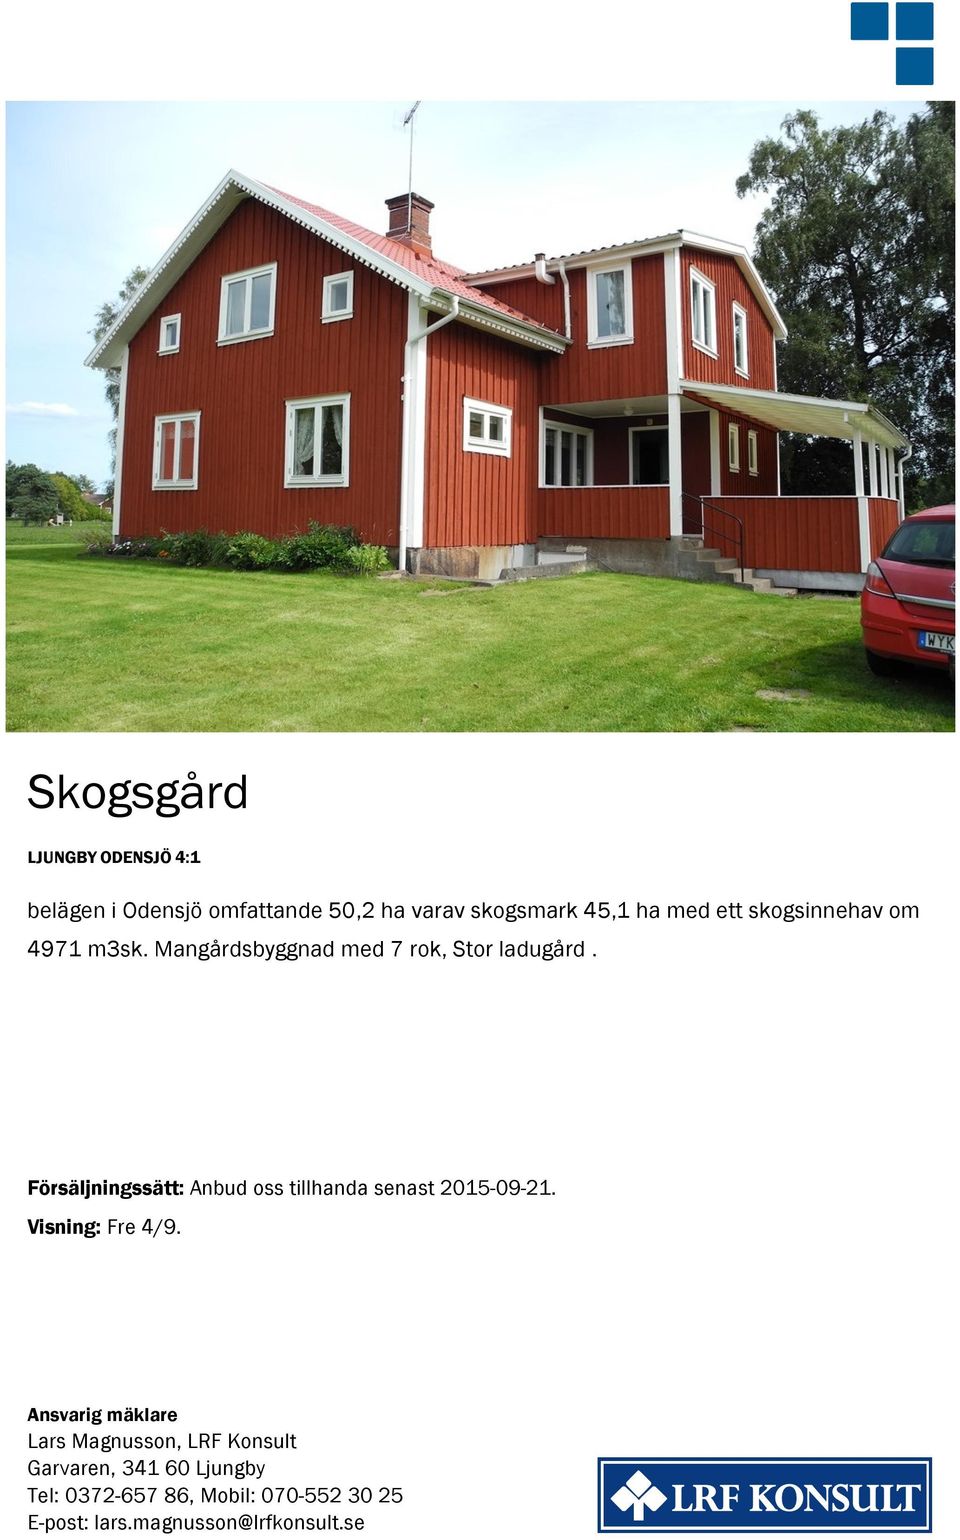 Försäljningssätt: Anbud oss tillhanda senast 2015-09-21. Visning: Fre 4/9.